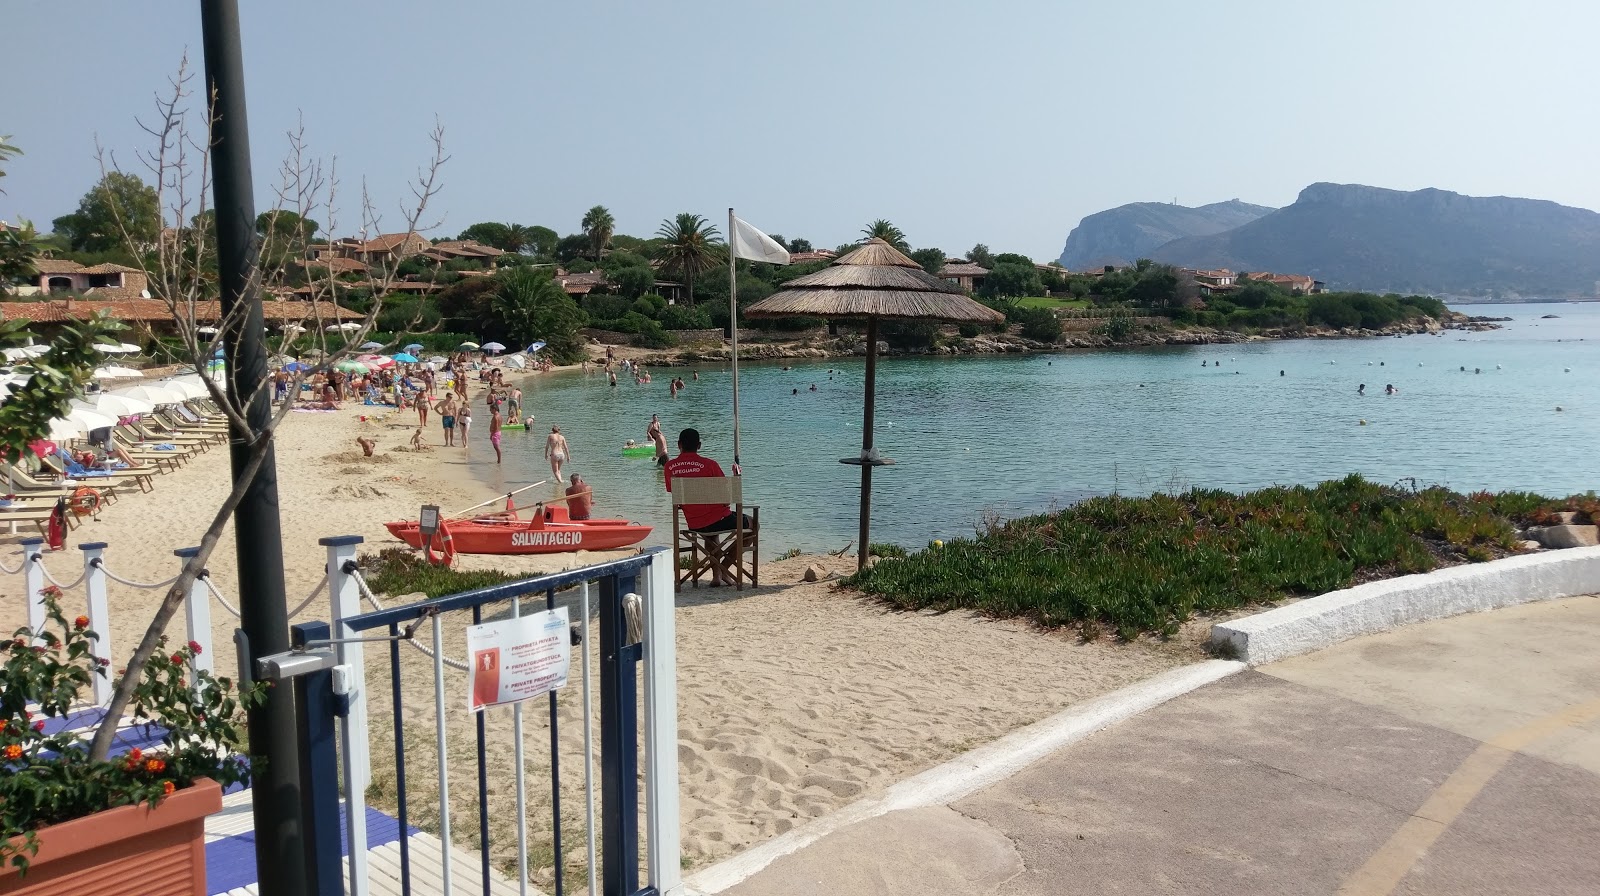 Foto av Spiaggia Baia Caddinas och bosättningen